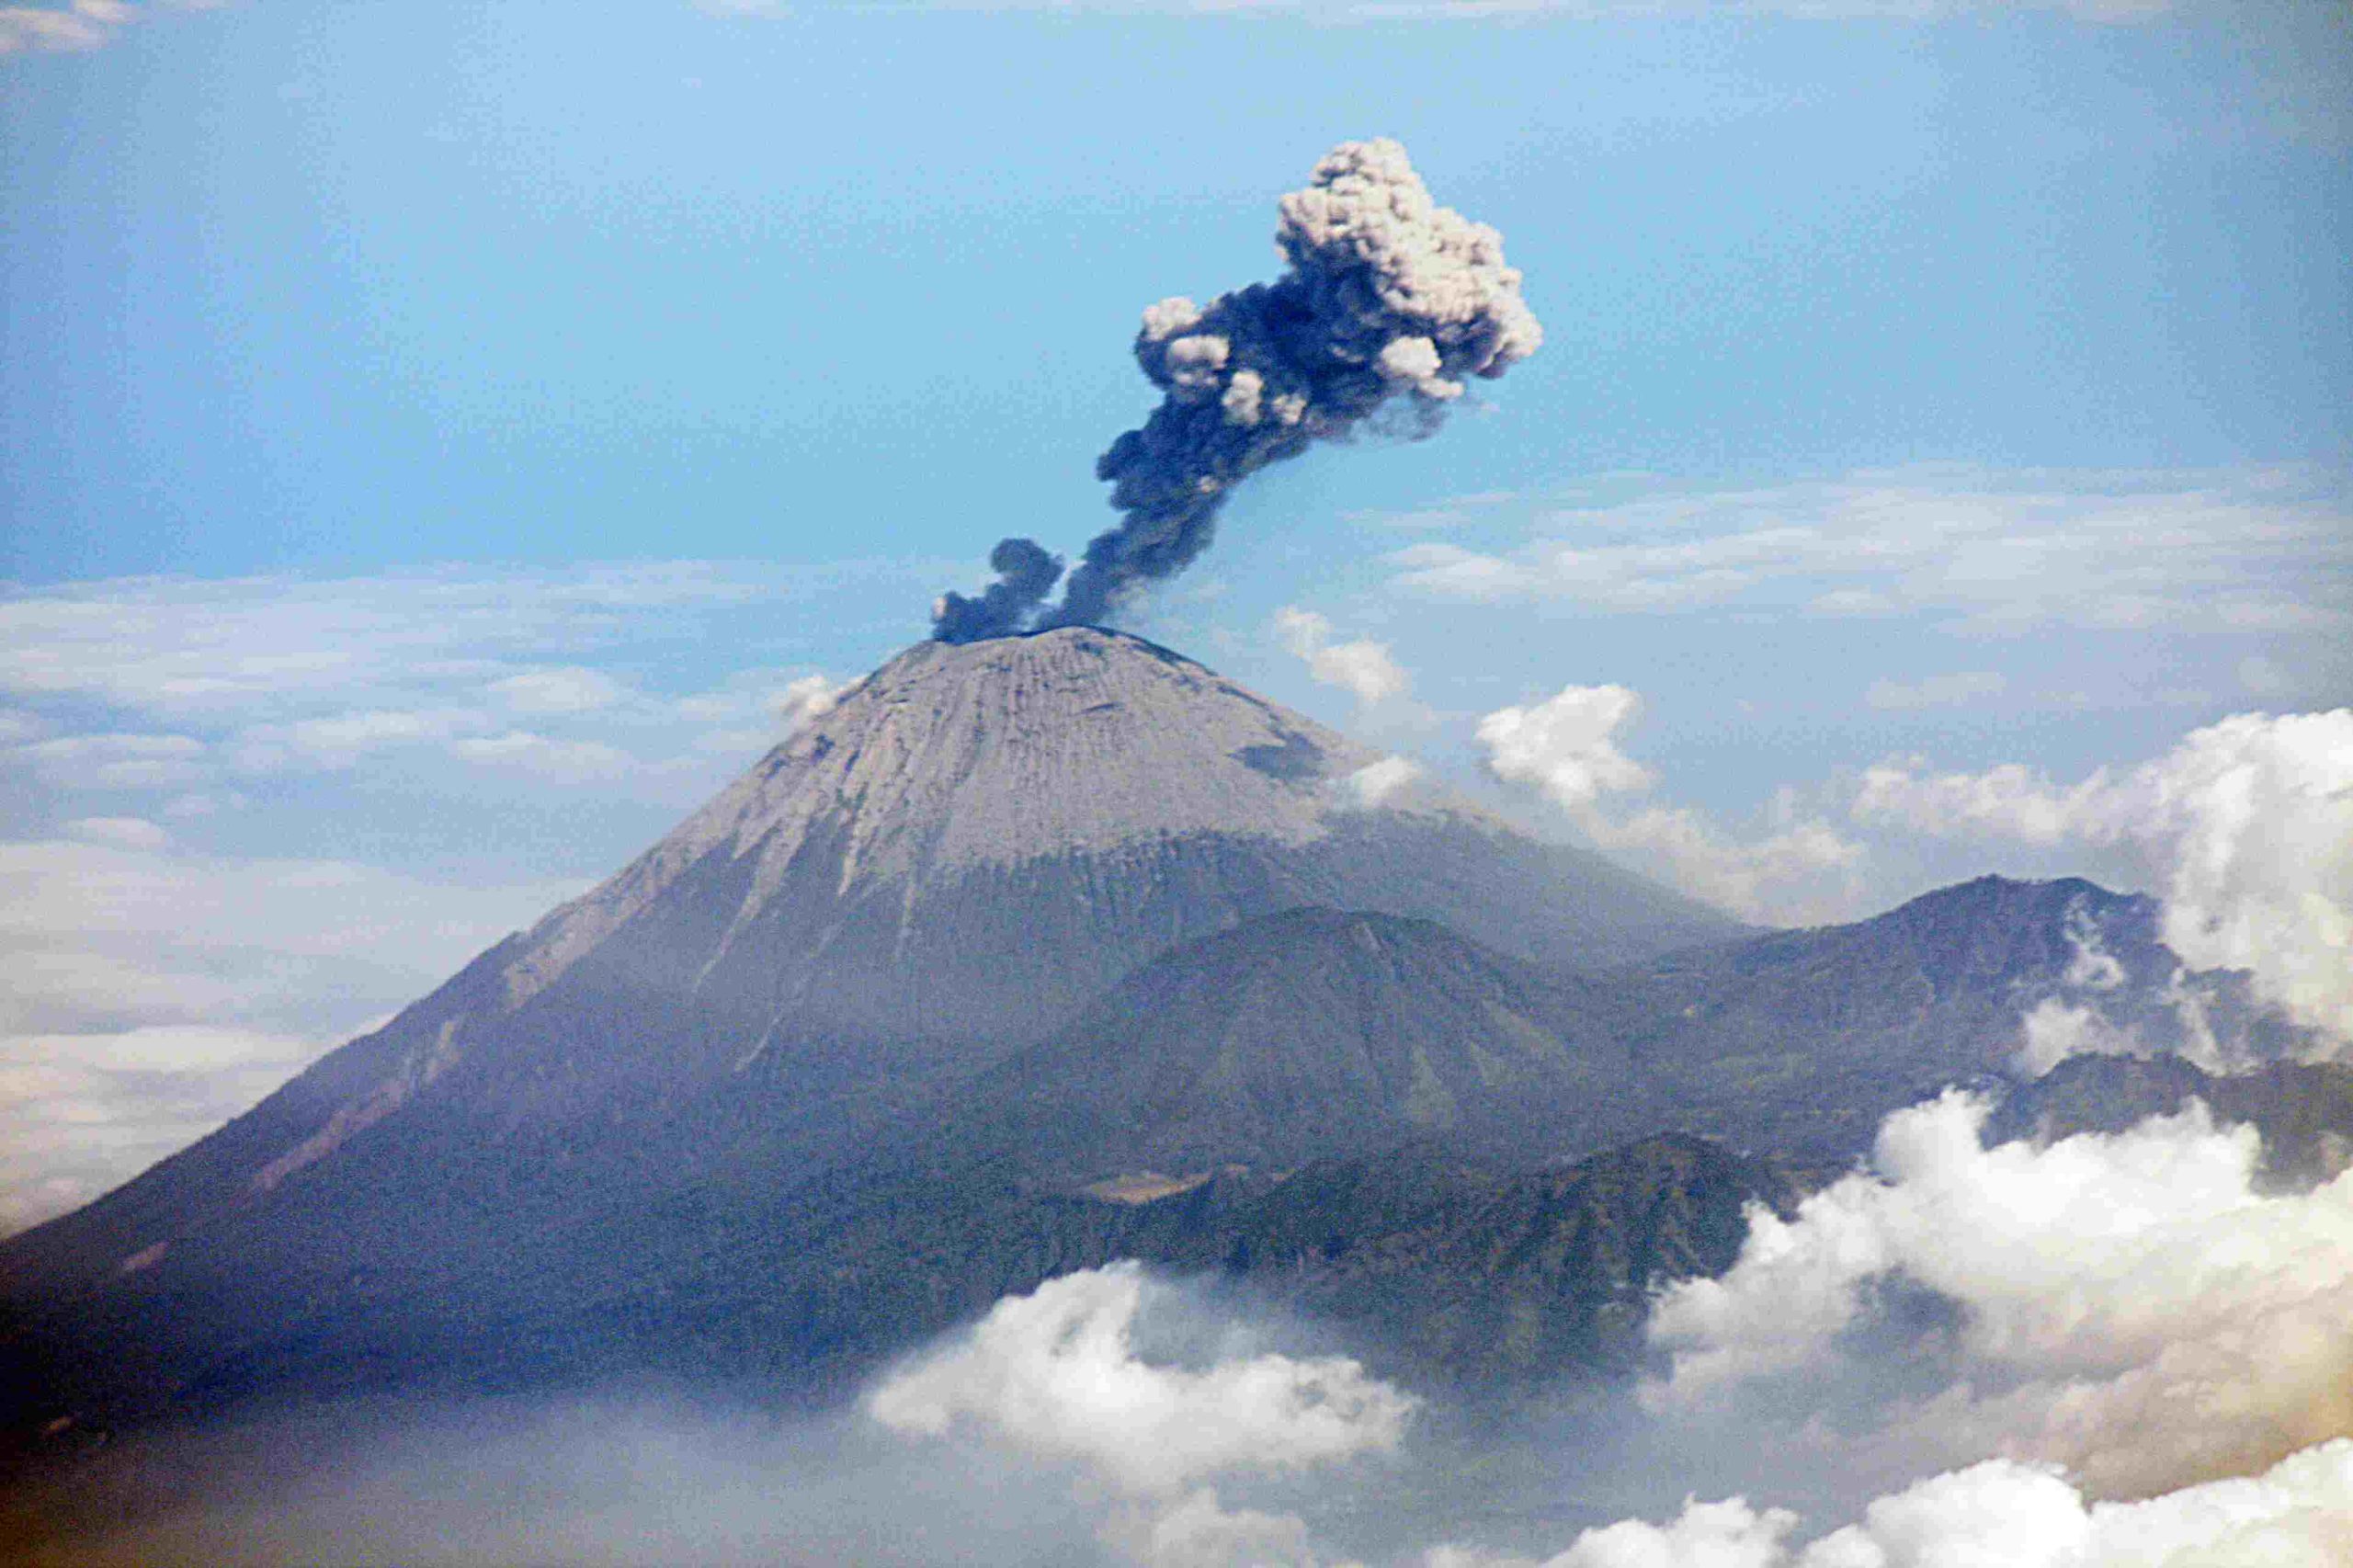 Ινδονησία: Εξερράγη το ηφαίστειο Σεμέρου – Έφτασε σε ύφος τα 5 χιλιόμετρα η τέφρα (βίντεο)